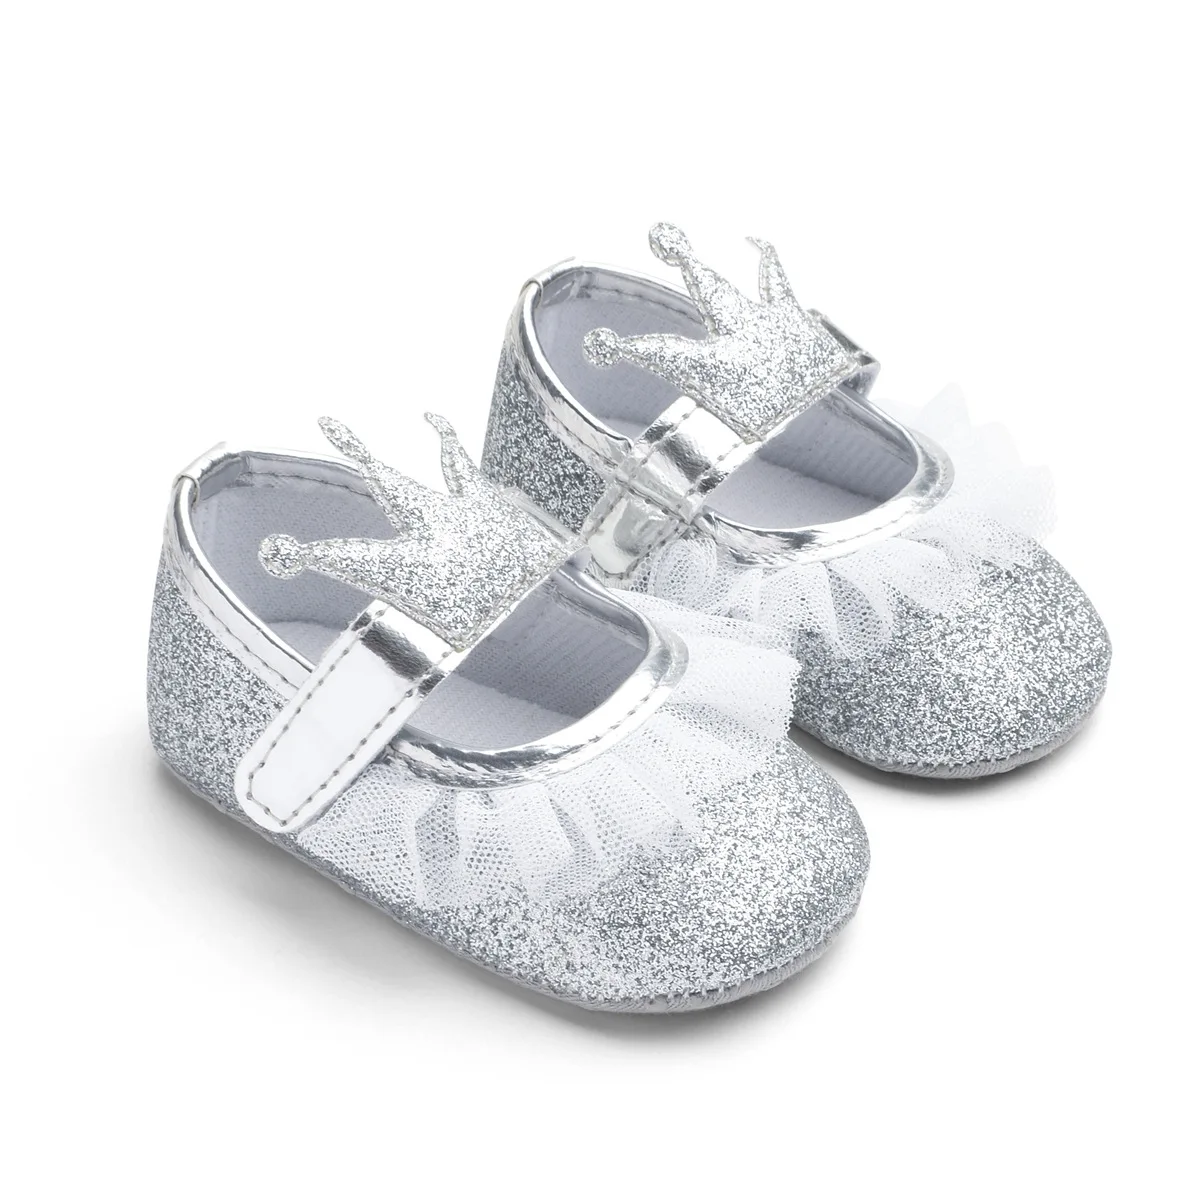 Новорожденная вечерние Вечеринка принцесса bling обувь Кружева Корона Блеск обувь для младенцев Bebe милые Prewalker нескользящая Мягкая подошва кроссовки обувь